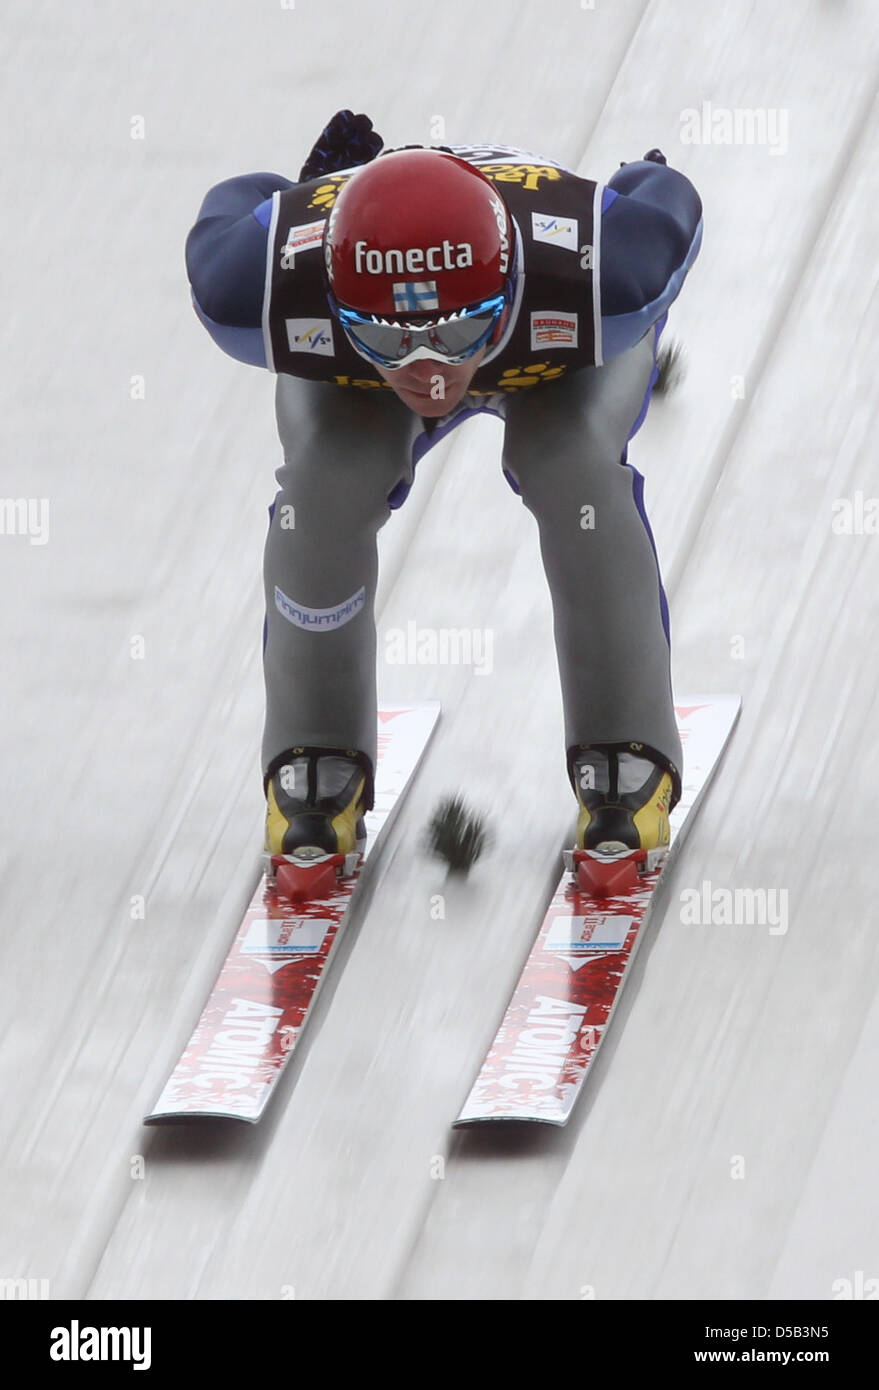 Der finnische Skispringer Janne Ahonen springt am Samstag (02.01.2010) in Innsbruck (Österreich) beim Trainingsdurchgang dritten Station der 58. Vierschanzentournee von der Bergiselschanze. Der weitere Trainingsdurchgang sowie die Qualifikation am Samstag wurden aufgrund der Wetterbedingungen abgesagt. Foto: Daniel Karmann dpa/lby Stock Photo